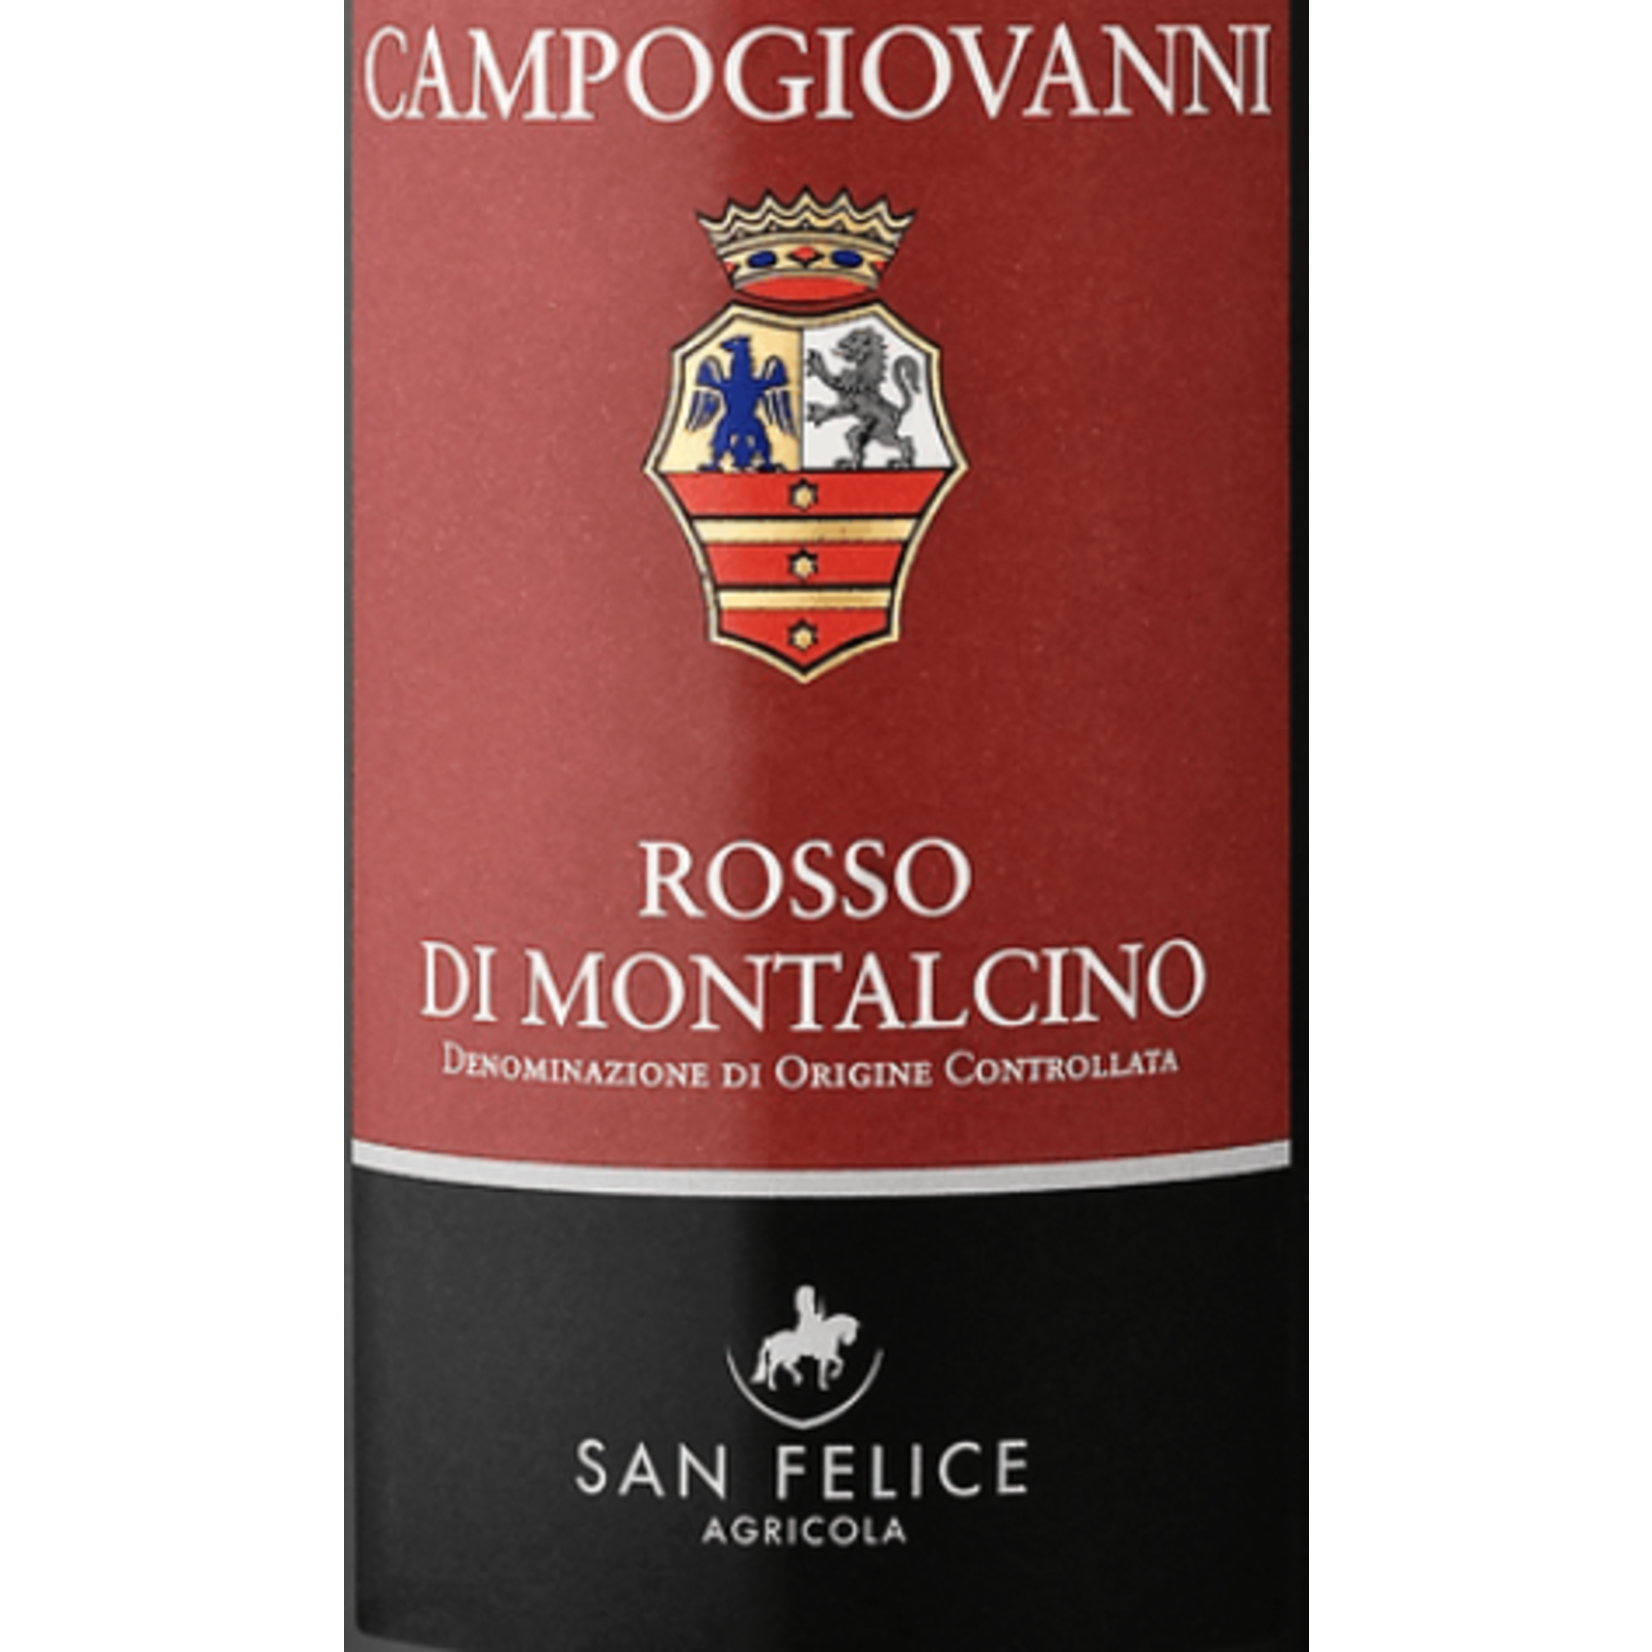 Campogiovanni San Felice Campogiovanni Rosso Di Montalcino 2019 Tuscany, Italy